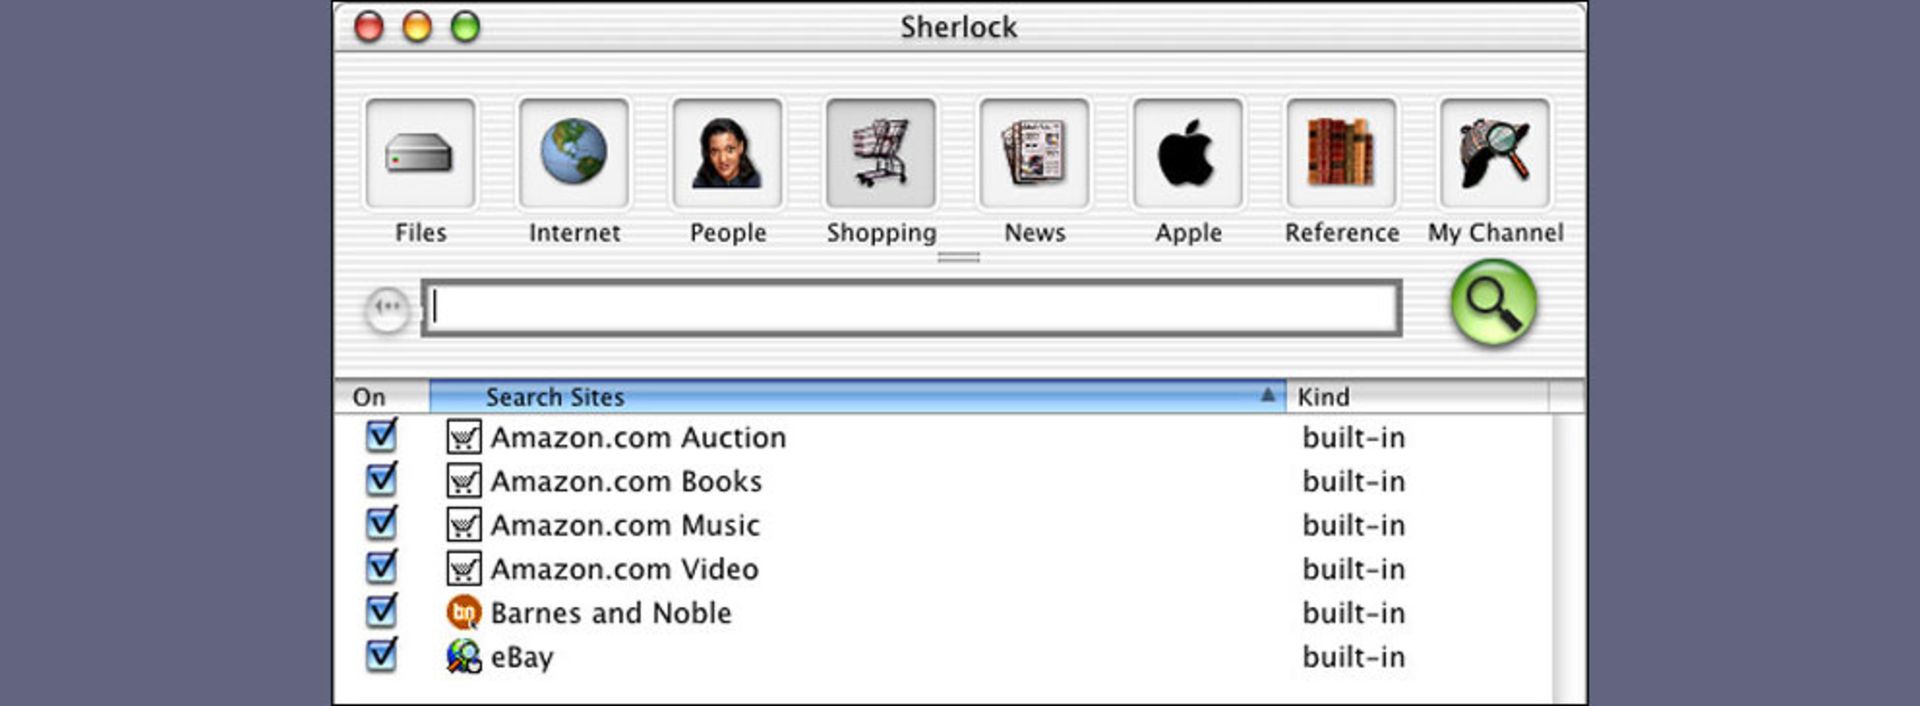 مرجع متخصصين ايران اپليكيشن Sherlock در Mac OS X Public Beta